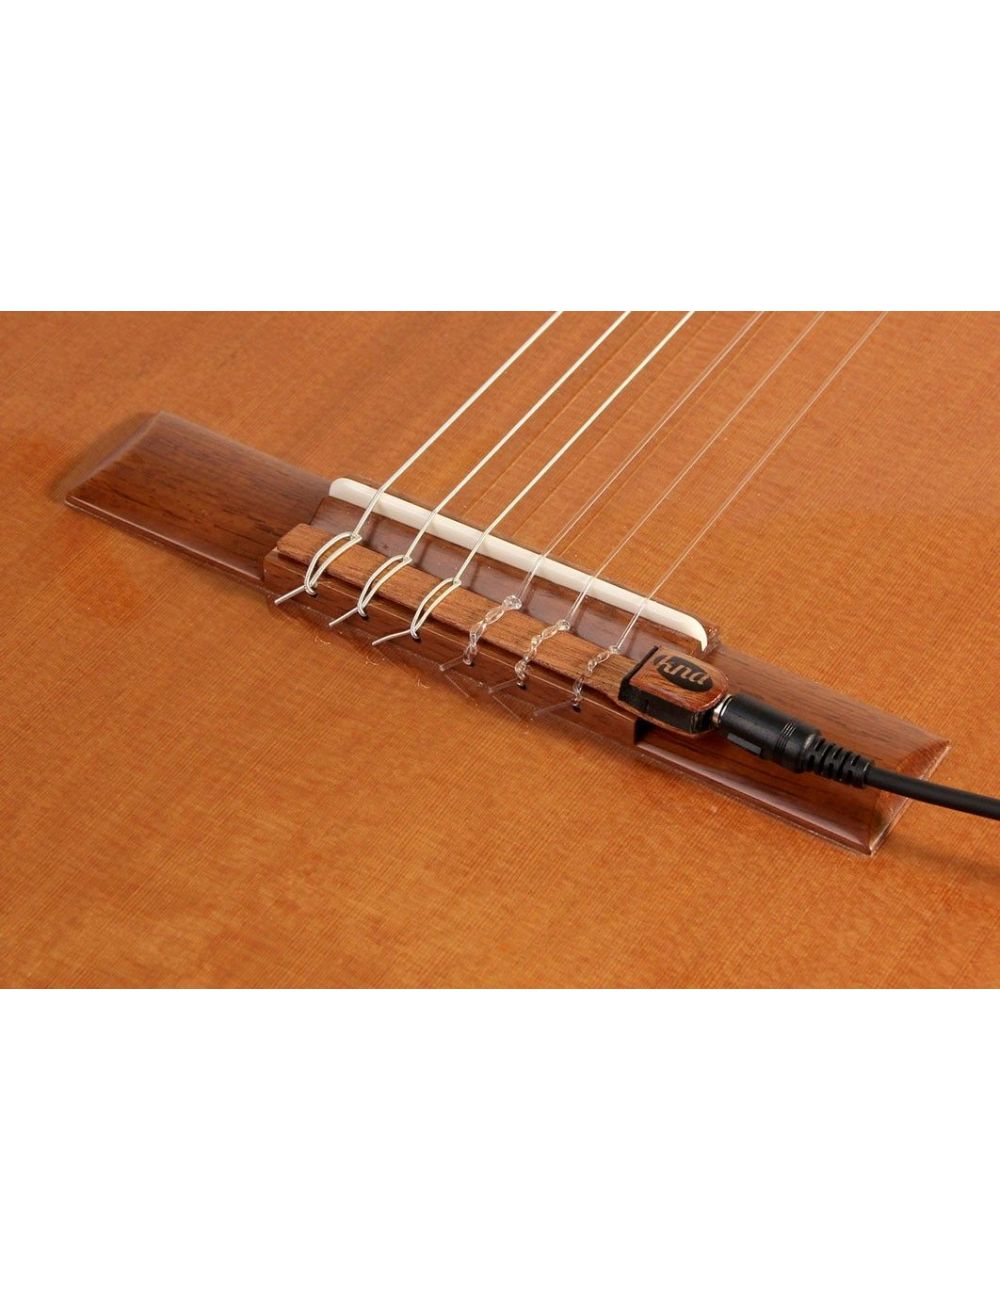 Kremona KNA NG-1 Pastilla de guitarra clásica